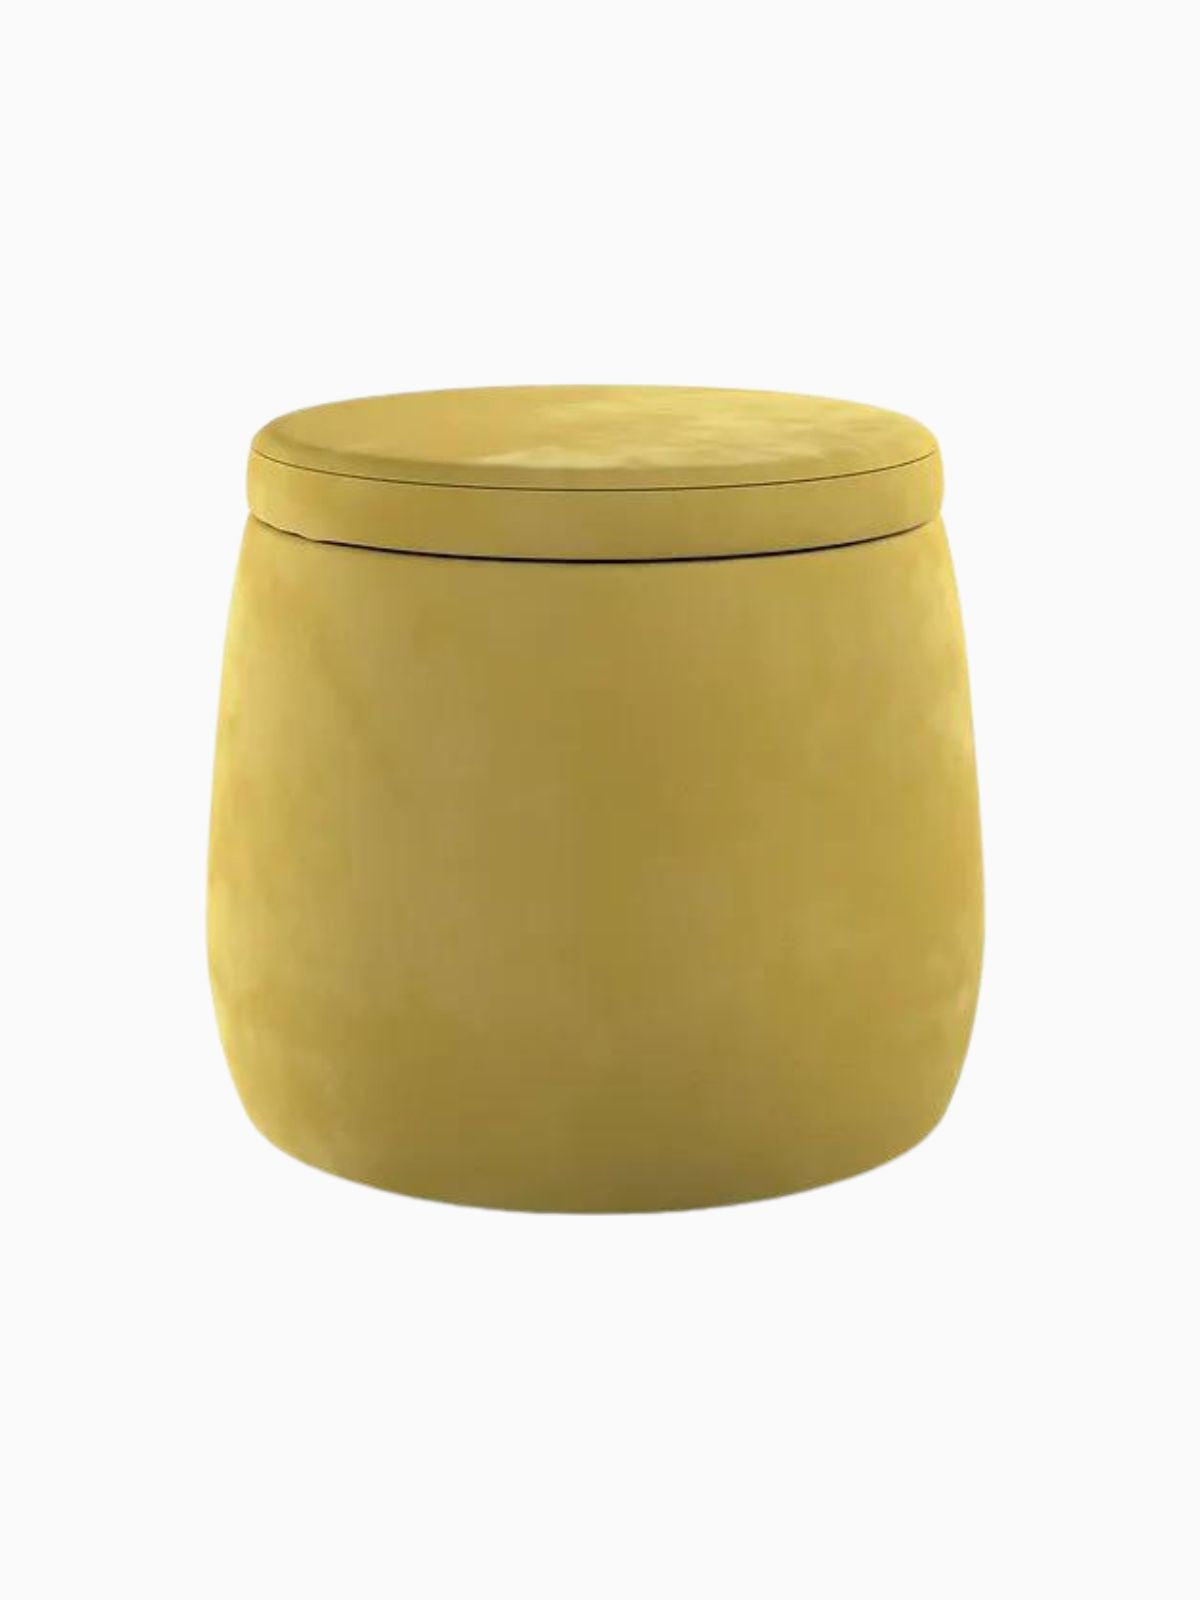 Pouf contenitore Candy Jar in velluto, colore verde oliva 40x40 cm.-1